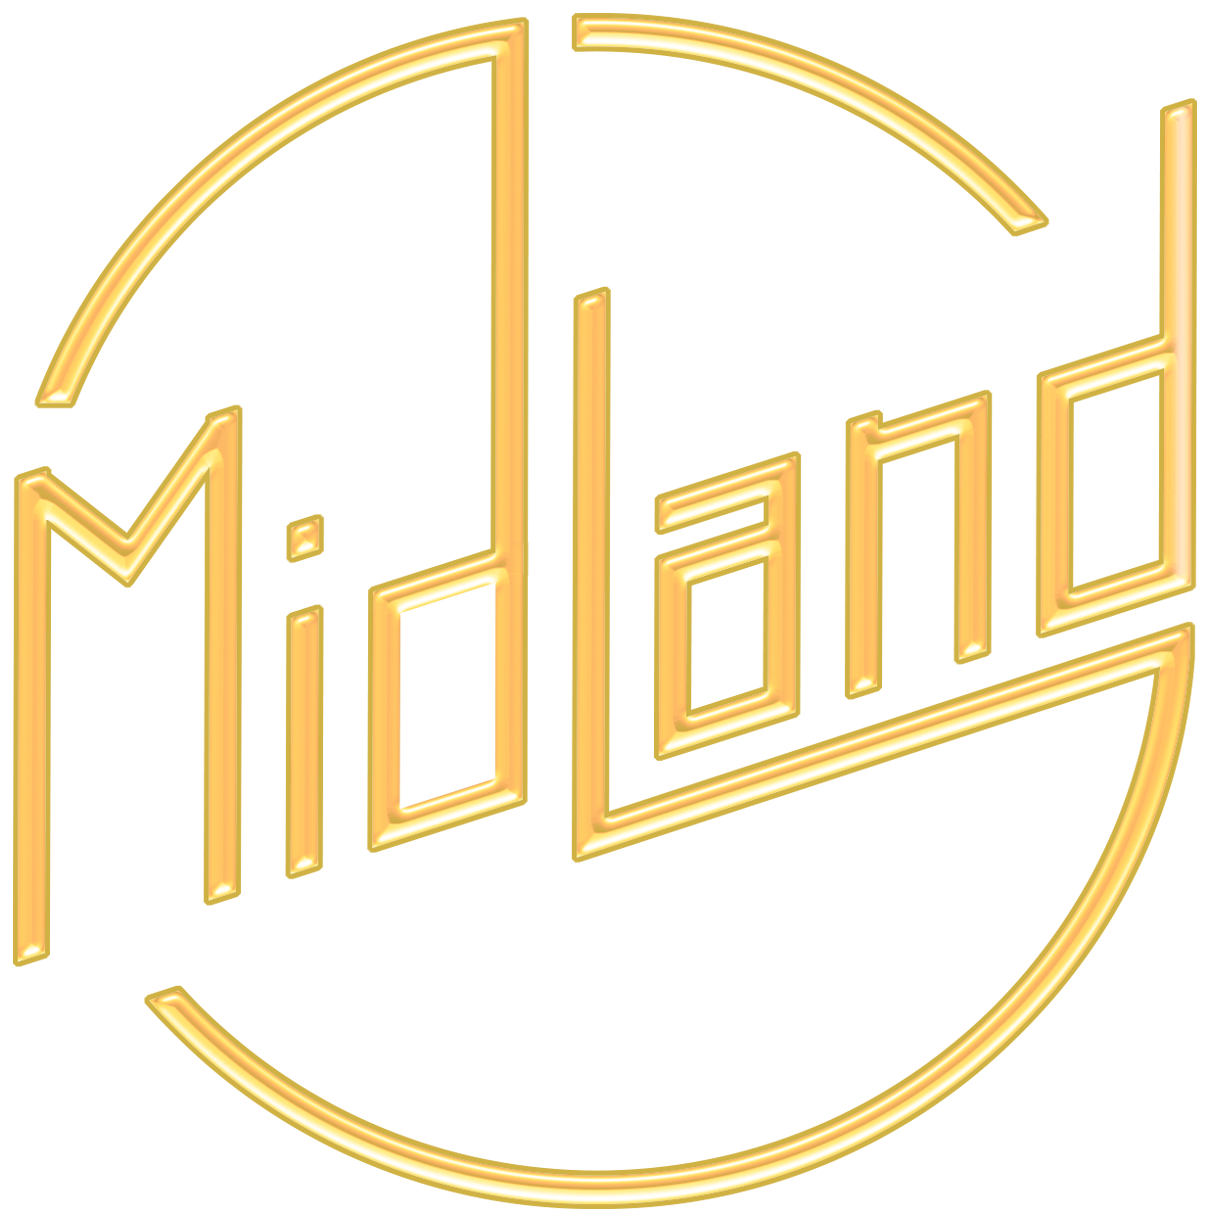 Home - Midland